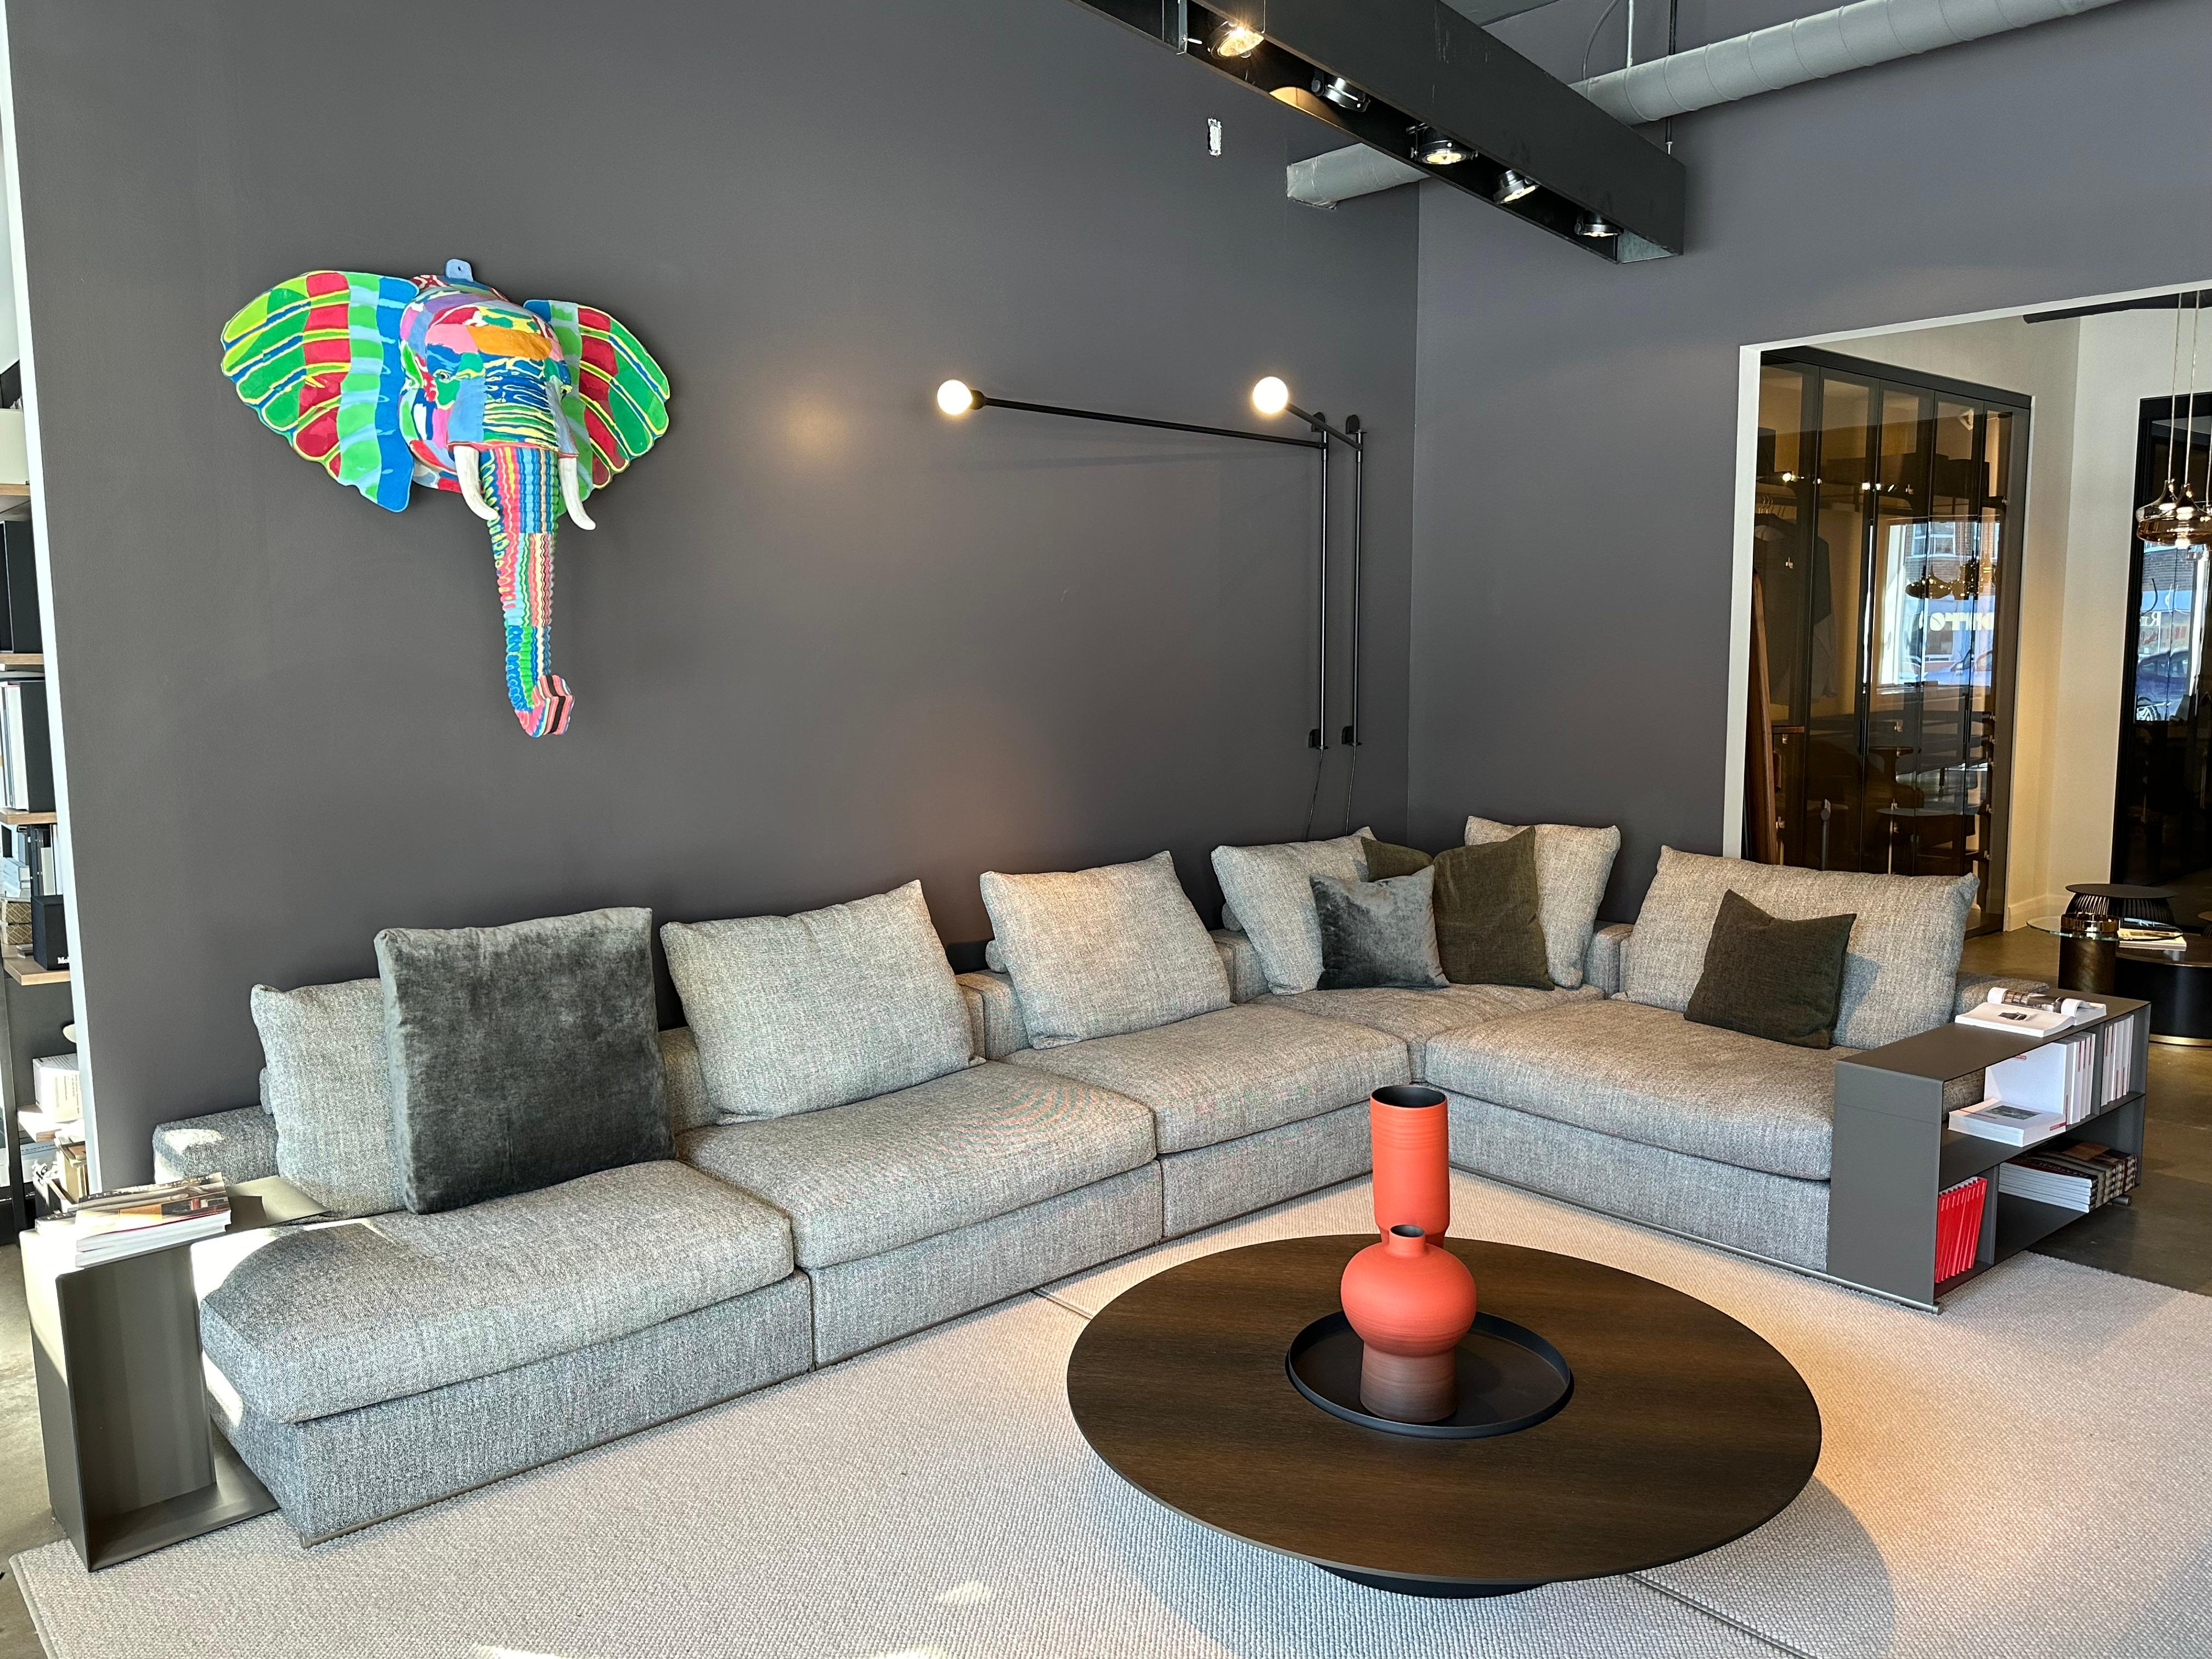 *** Ausstellungsstück, unbenutzt*** 
Das modulare Sofa Groundpiece wurde von Antonio Citterio für Flexform entworfen, einen italienischen High-End-Giganten in der Welt des Designs. Das Stück ist in der Farbgebung Topazio 991 und in einem L-förmigen